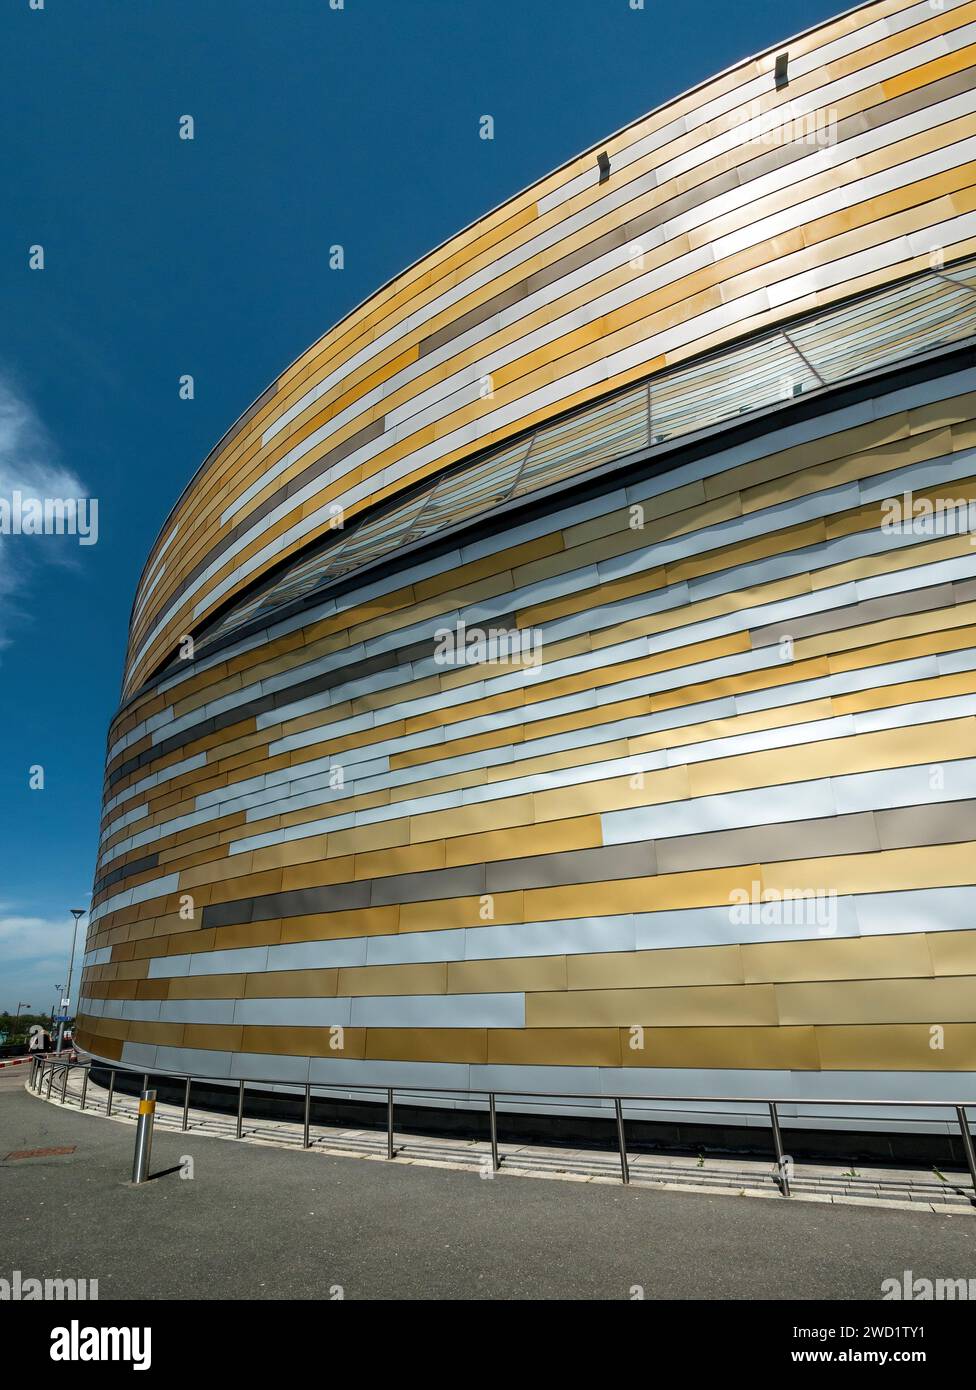 Farbenfrohe Verkleidung und moderne Architektur der Derby Arena / Velodrome vor blauem Himmel, Derby, England, Großbritannien Stockfoto